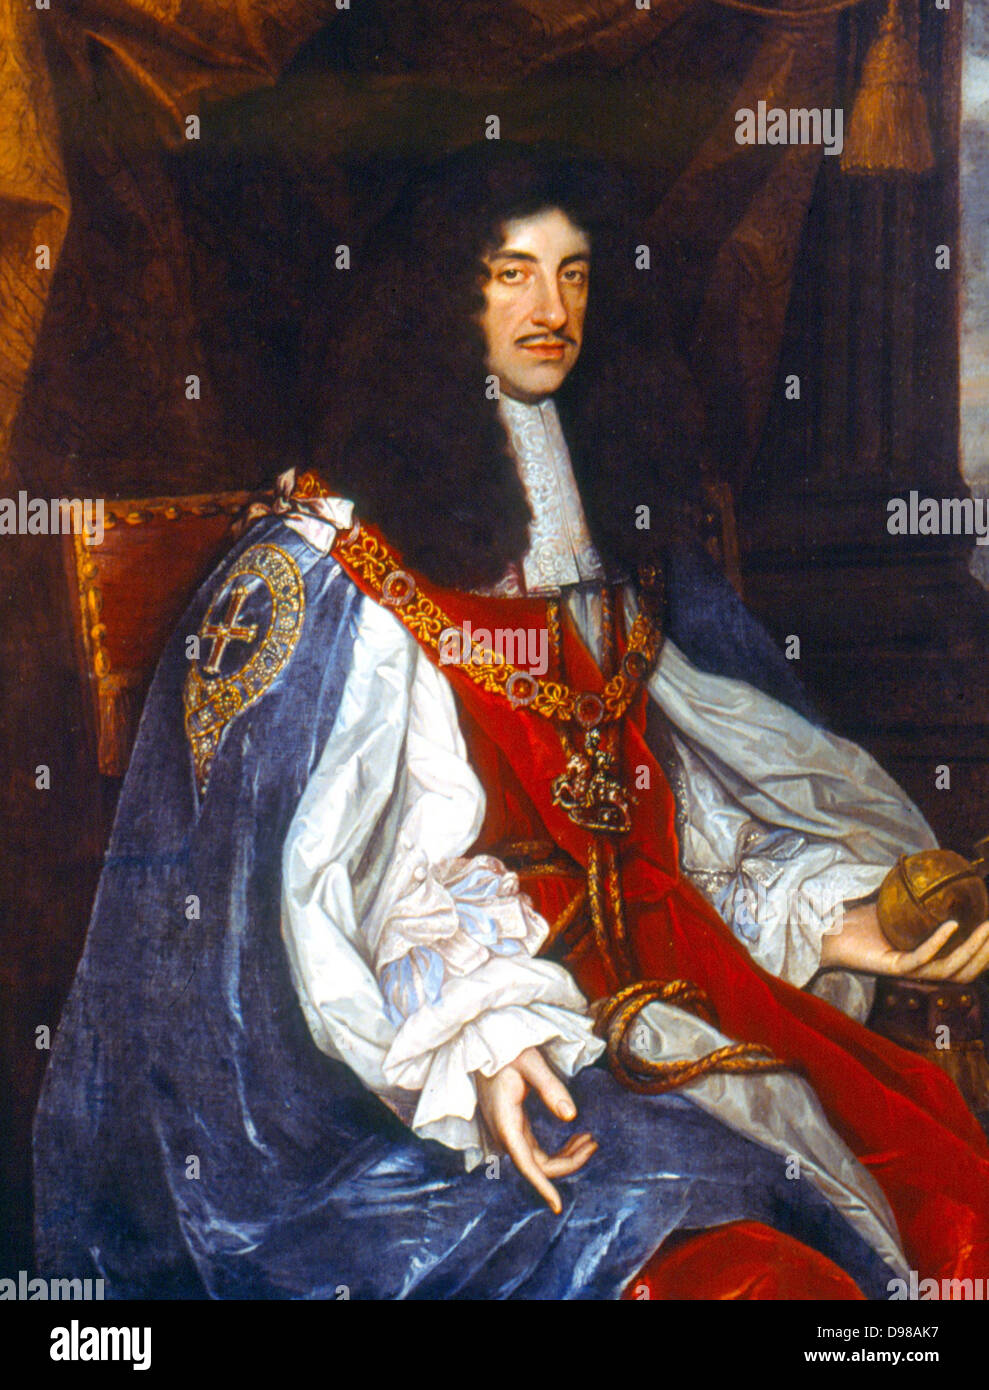 Carlo II (1630-1688), re di Gran Bretagna e Irlanda 1660-1688. Ritratto dallo studio di Michael Wright c1660 al momento della restaurazione della monarchia. Foto Stock